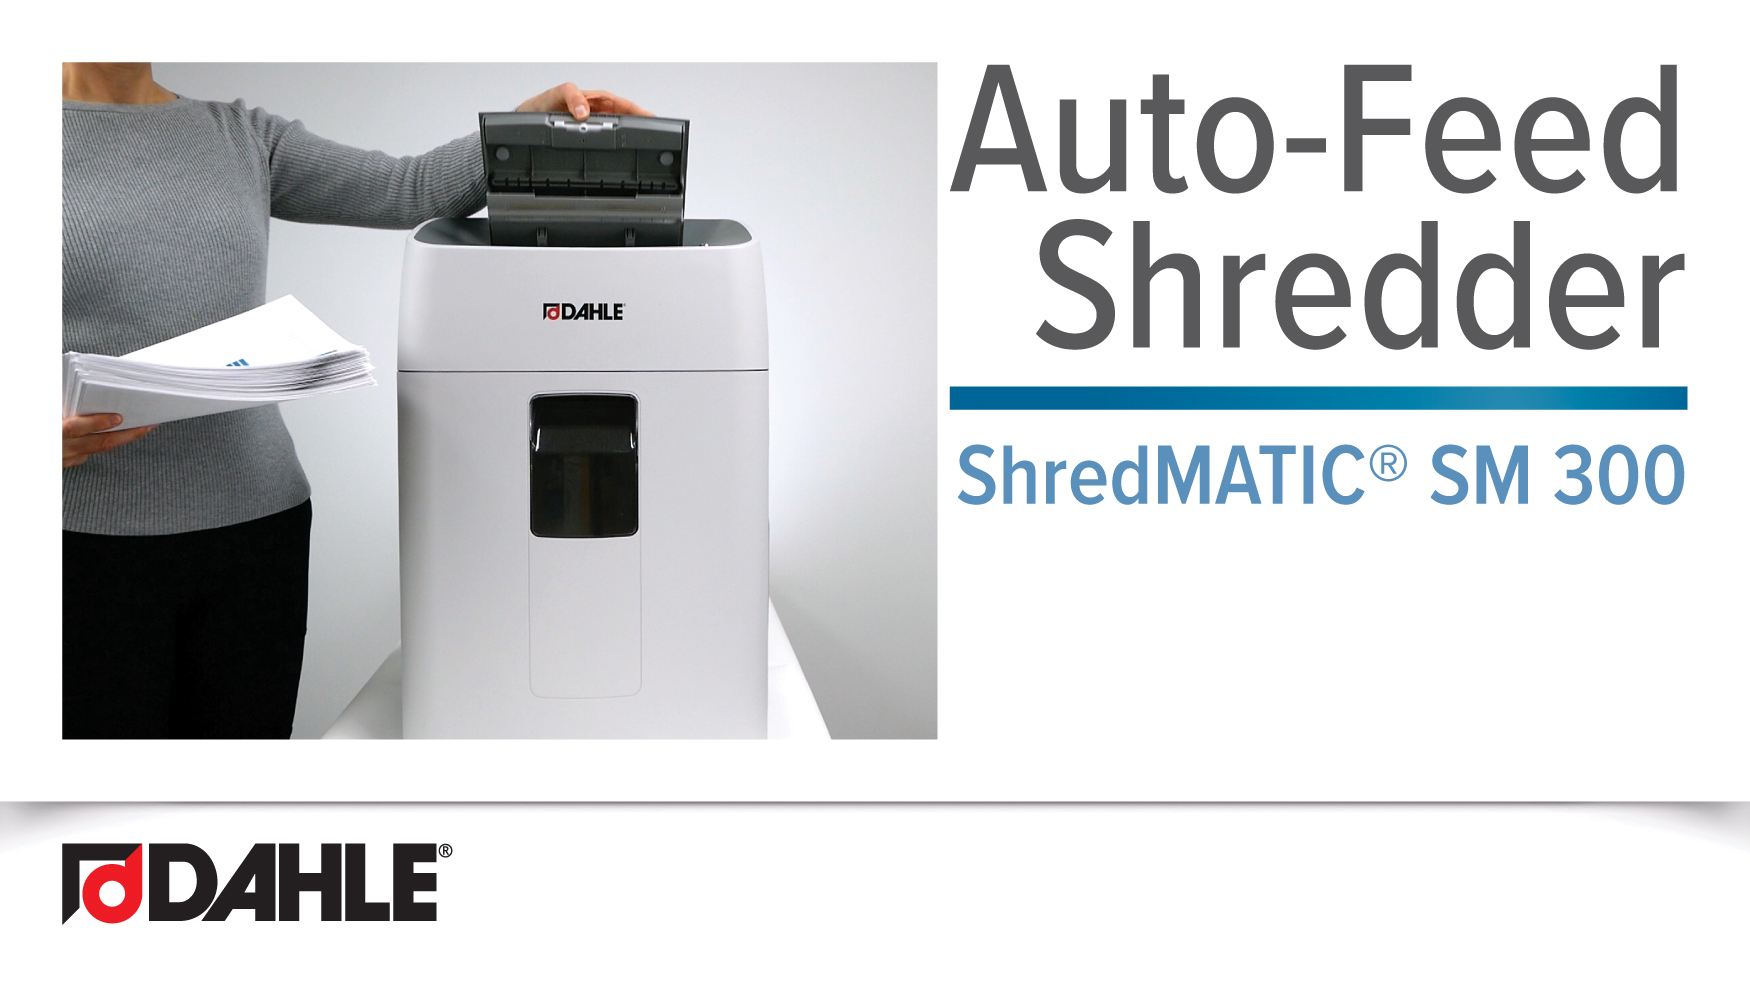 <big><strong>ShredMATIC® SM 300 </strong></big><br>Auto-Feed Shredder